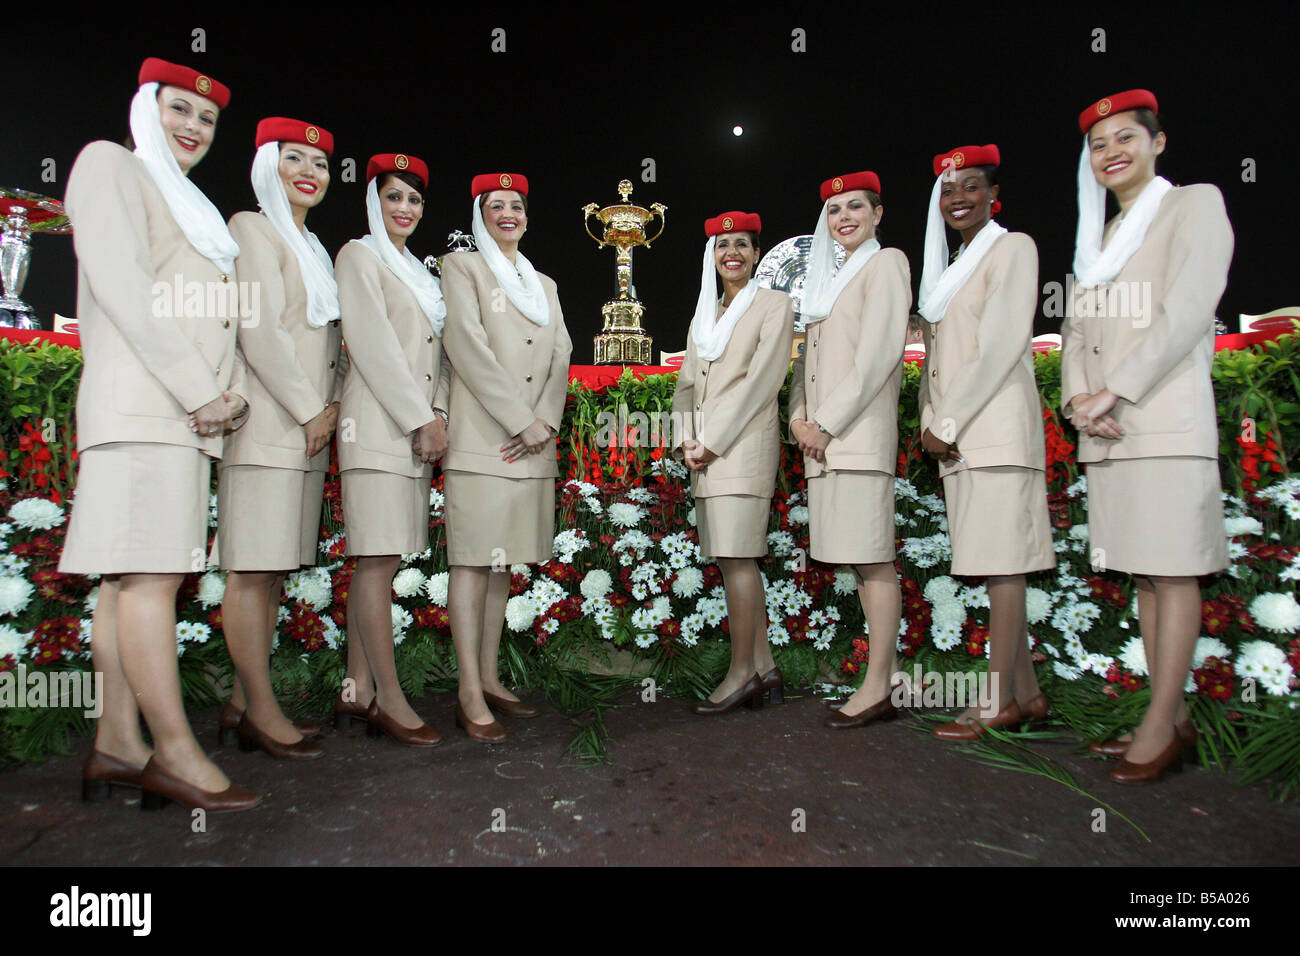 Hôtesses de la compagnie aérienne Emirates avec la coupe pour le vainqueur de la Coupe du Monde de Dubaï, Dubaï, Émirats Arabes Unis Banque D'Images